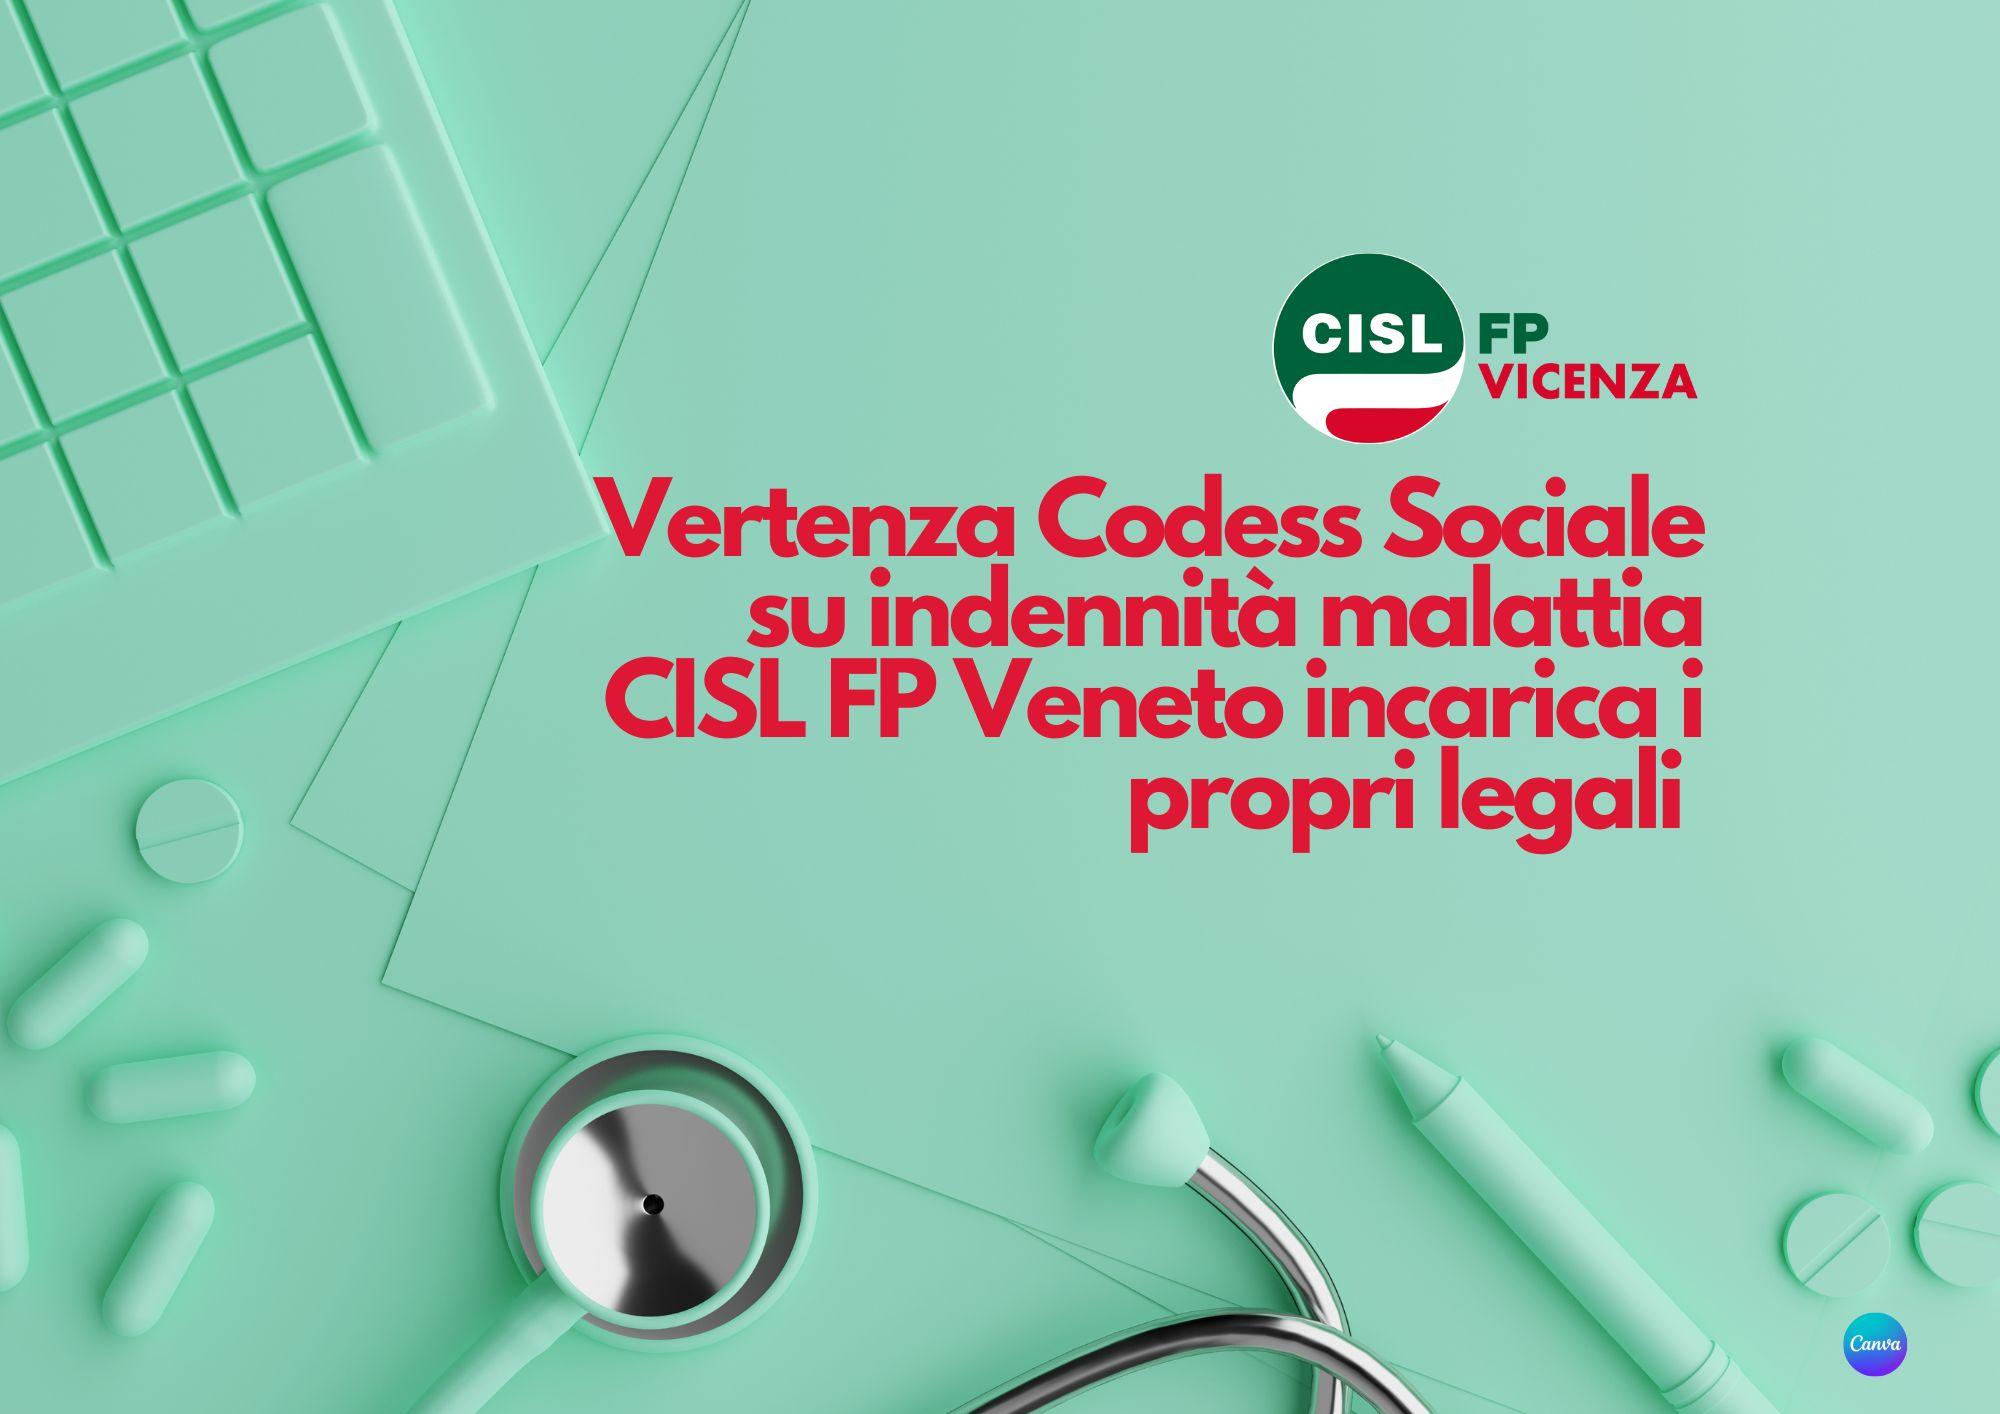 CISL FP Vicenza. Vertenza Codess Sociale su indennità malattia. La CISL FP ha dato mandato ai propri legali